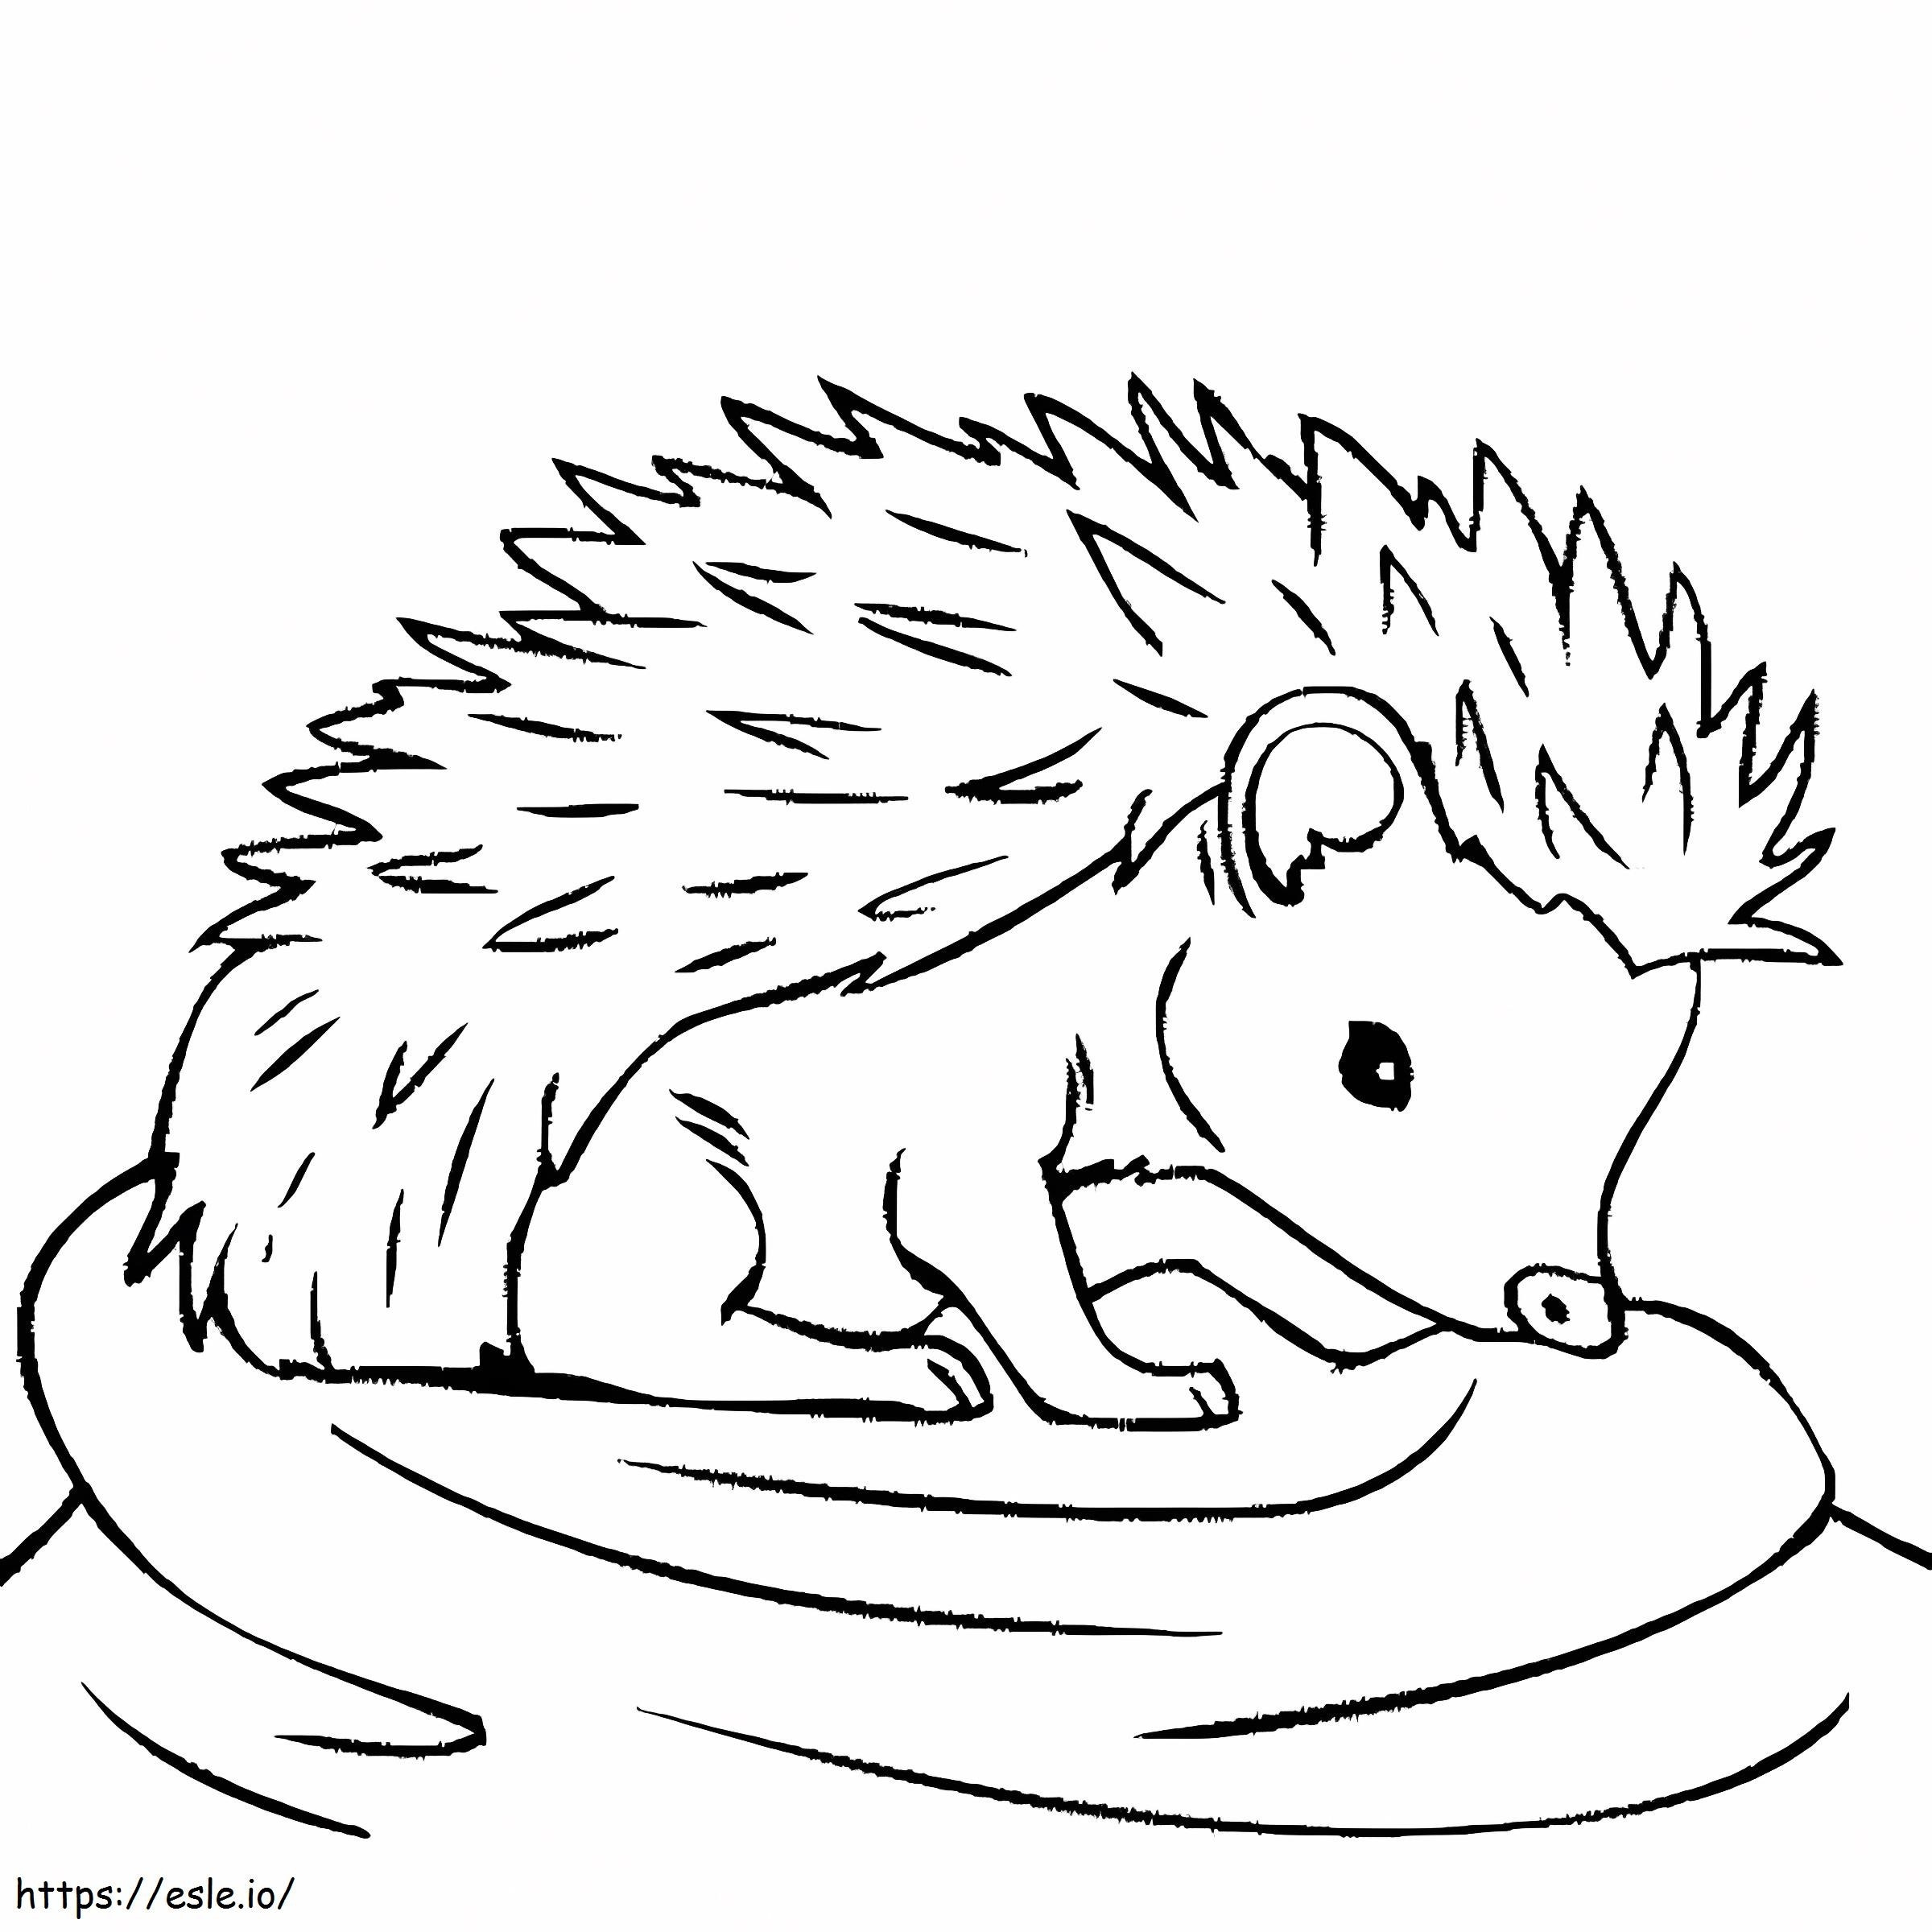 Adorable Hedgehog coloring page